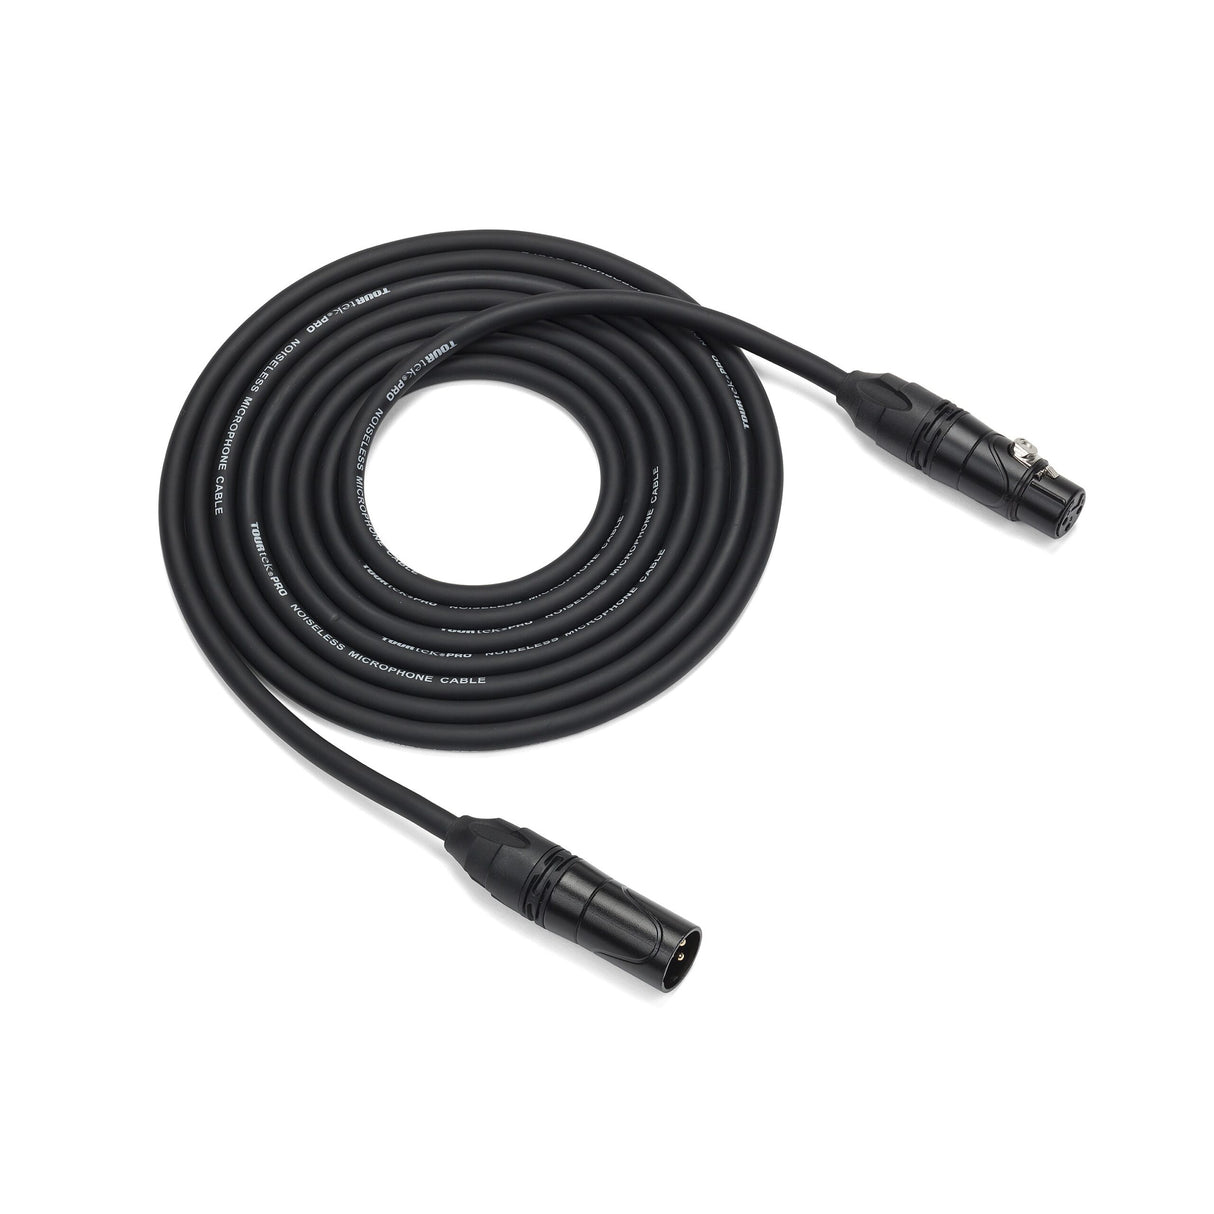 Samson Tourtek Pro TPM Microphone Cable, 25 Foot